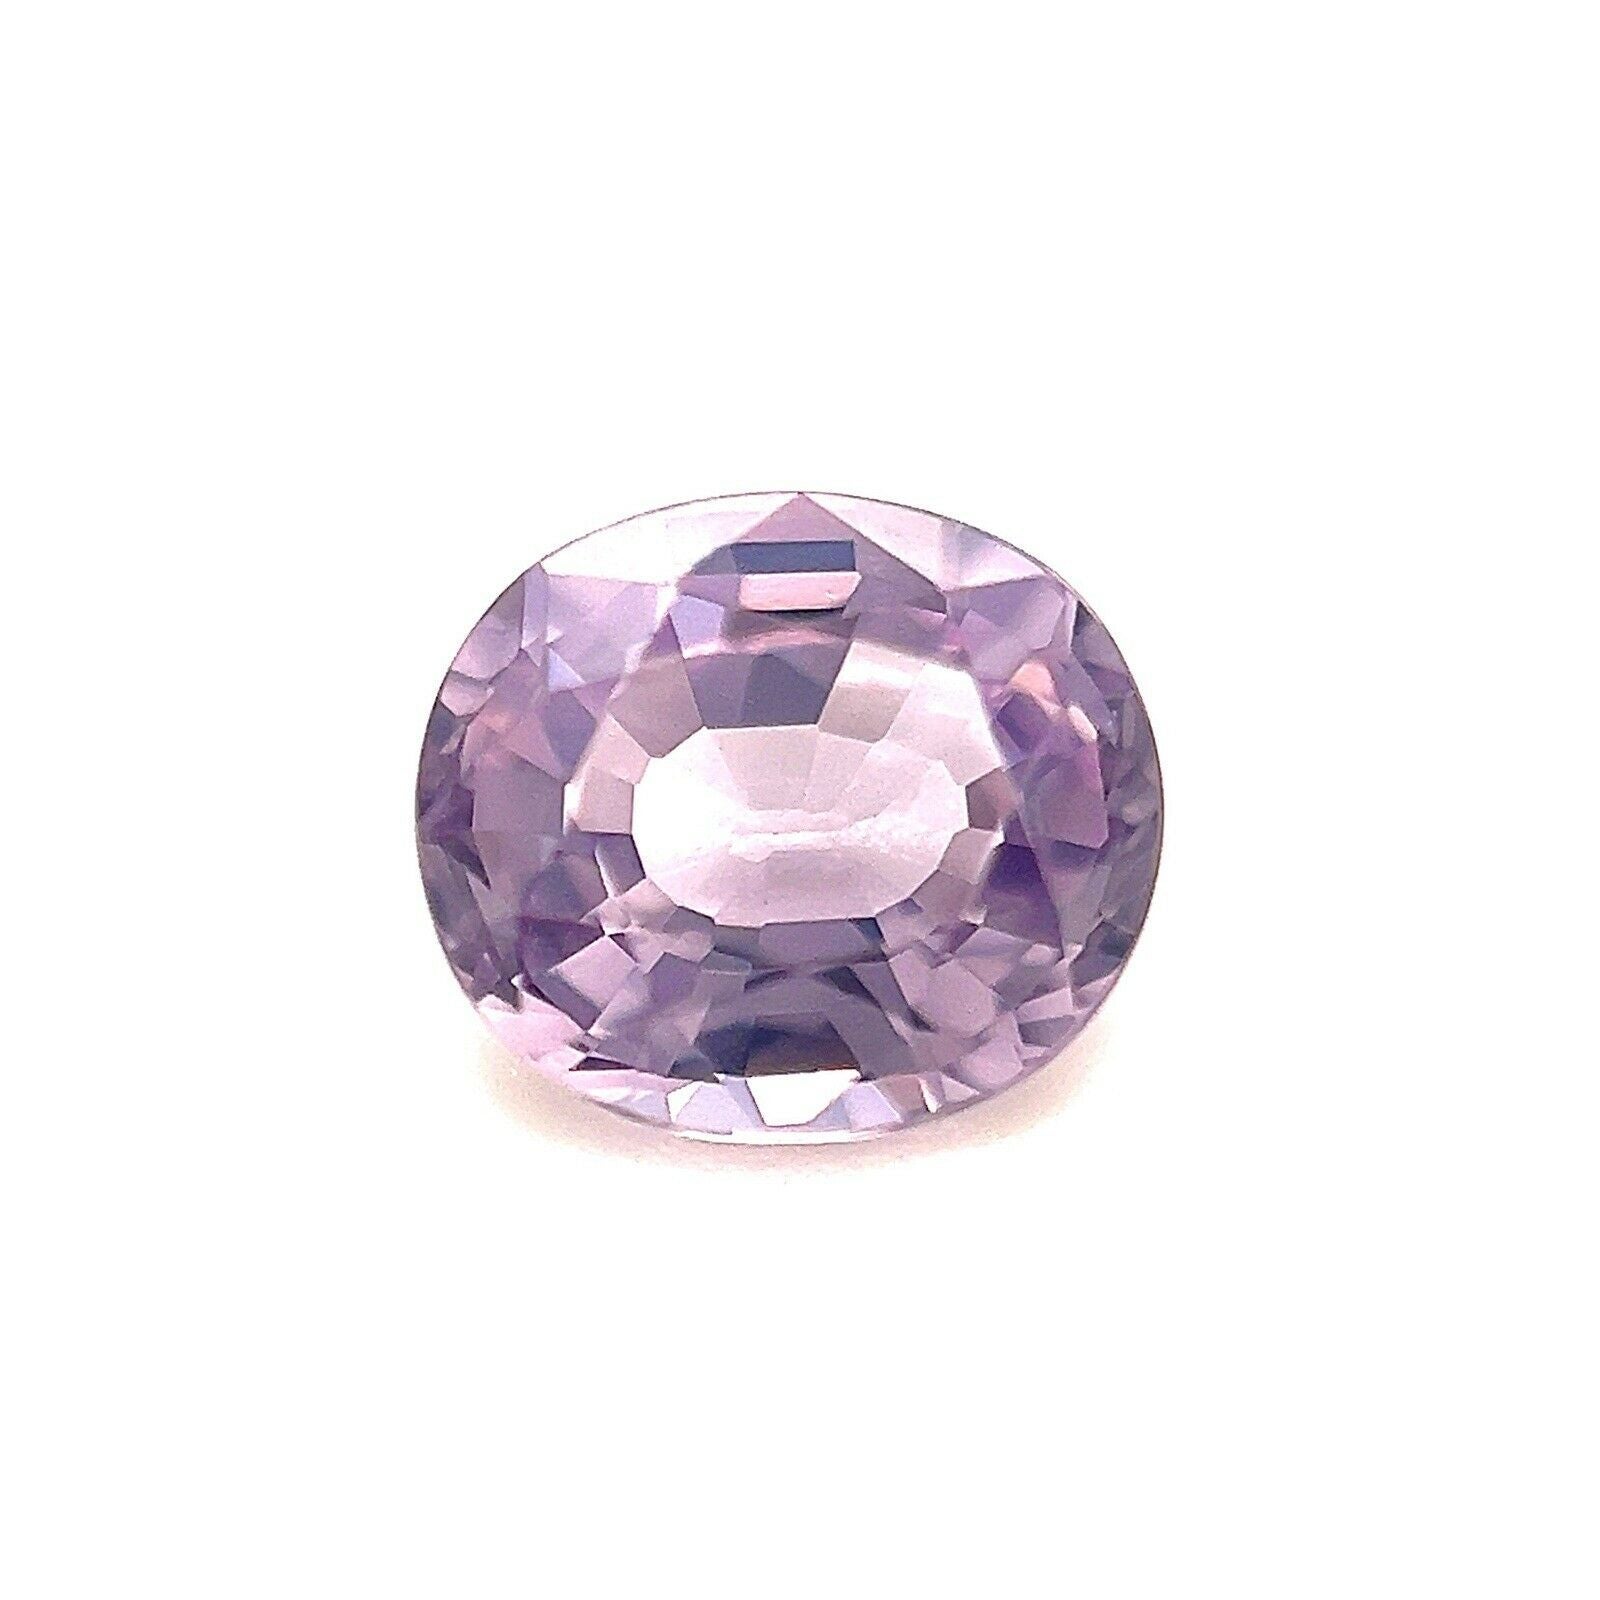 Fine Violet Purple Spinel 1.47ct Oval Cut Rare Gemstone Loose Gem For Sale